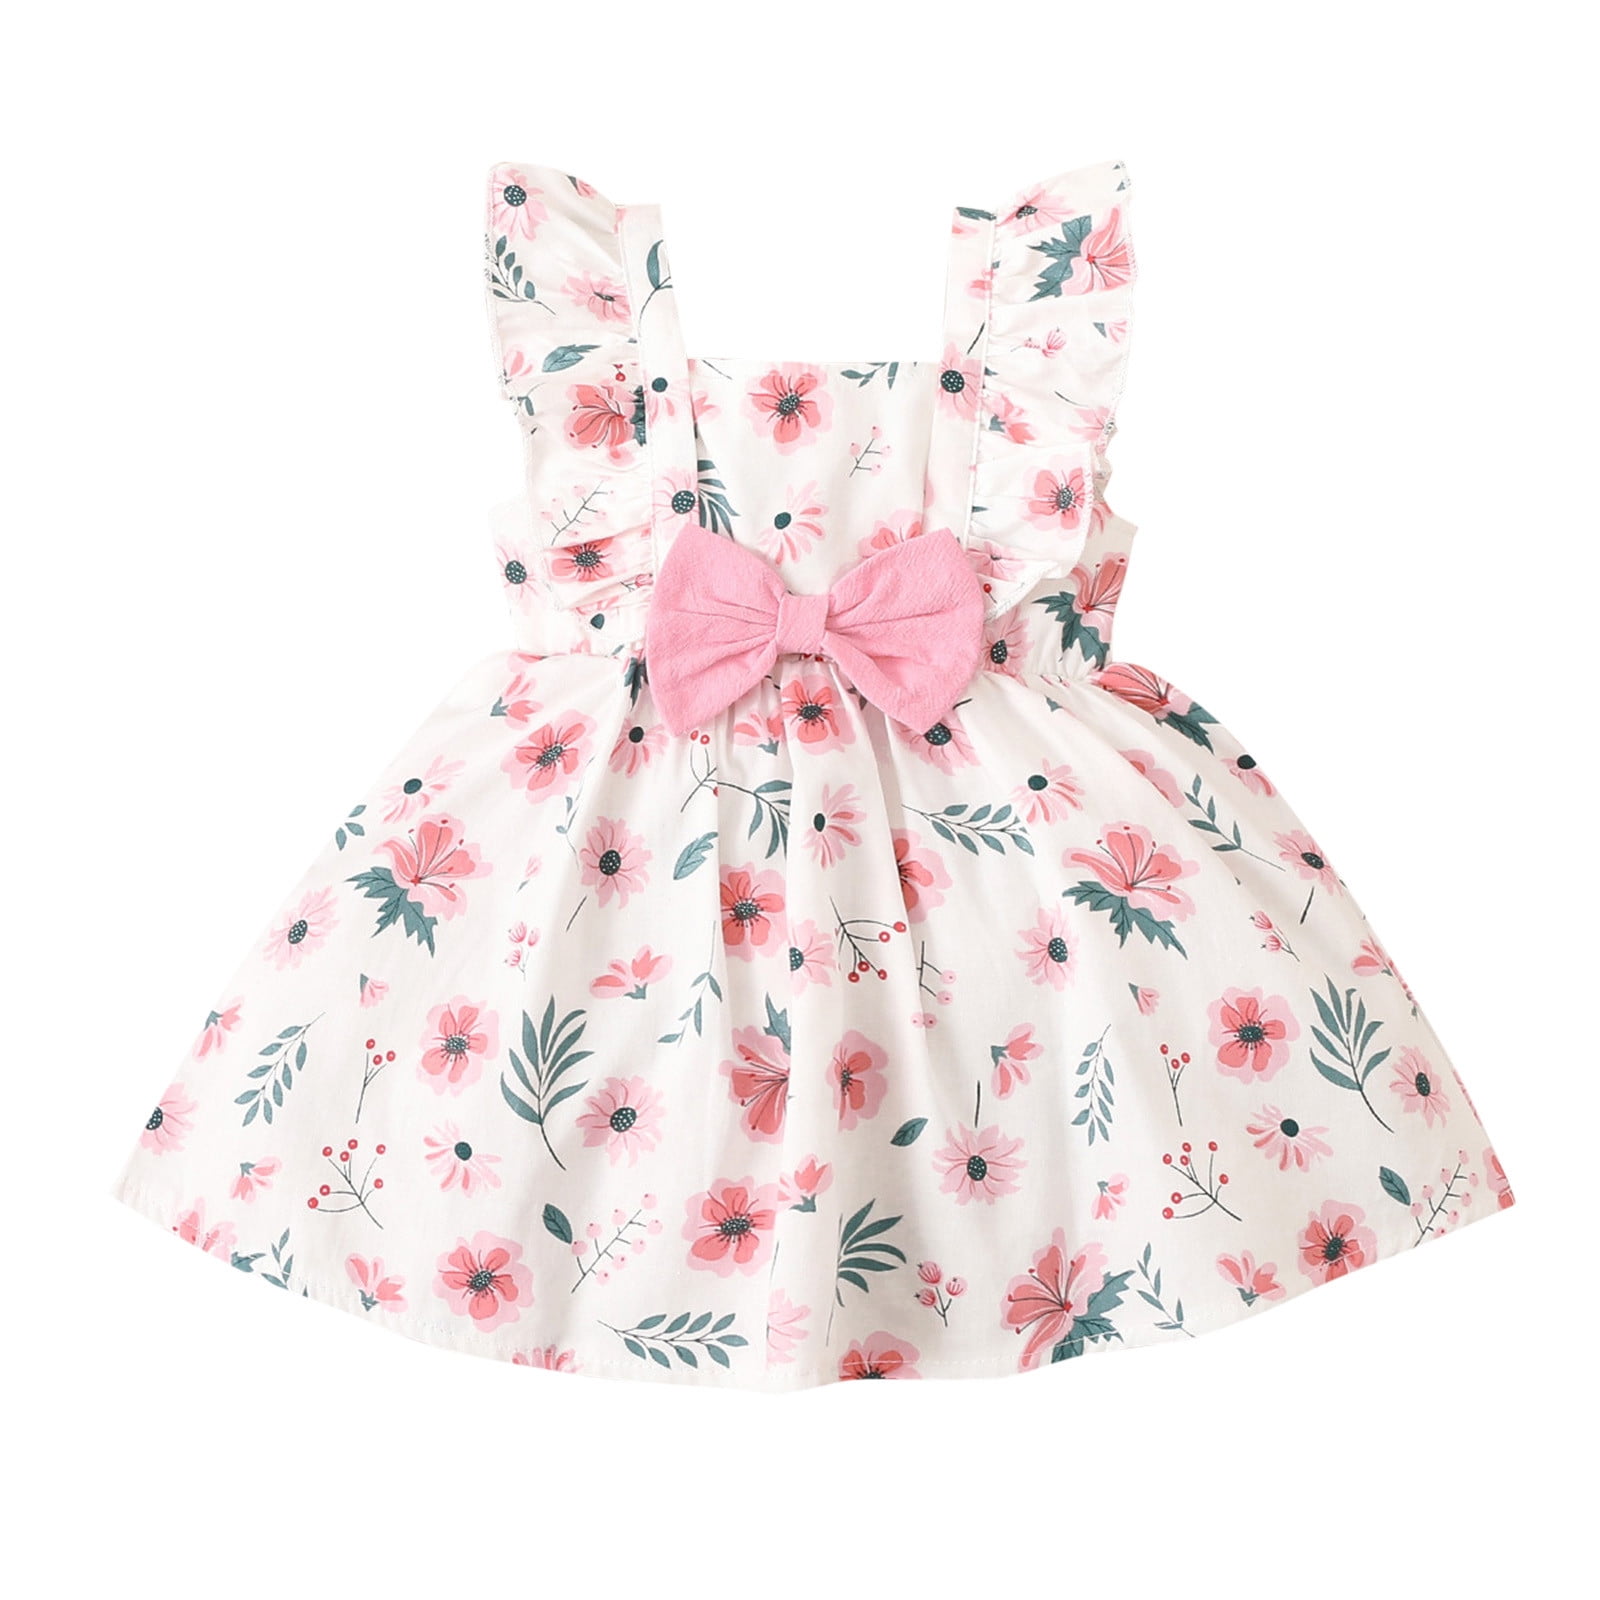 TAIAOJING Baby Girls Summer Dress Kids Toddler Beach Floral Sleeveless ...